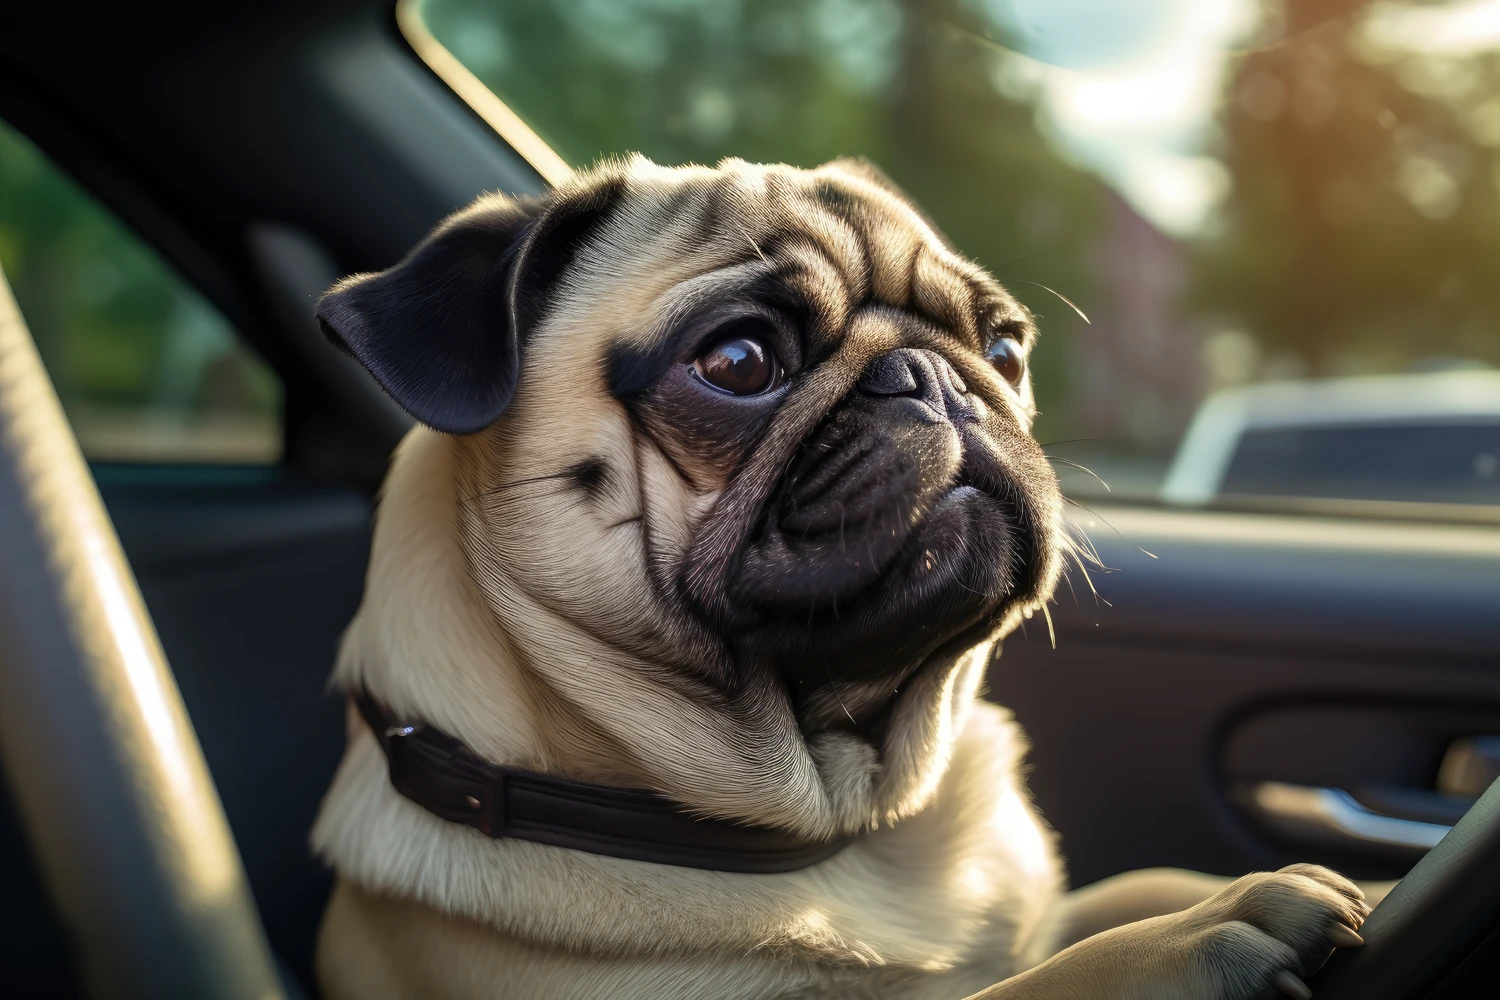 Buick Enclave Dog Car Seat Belt for Pugs